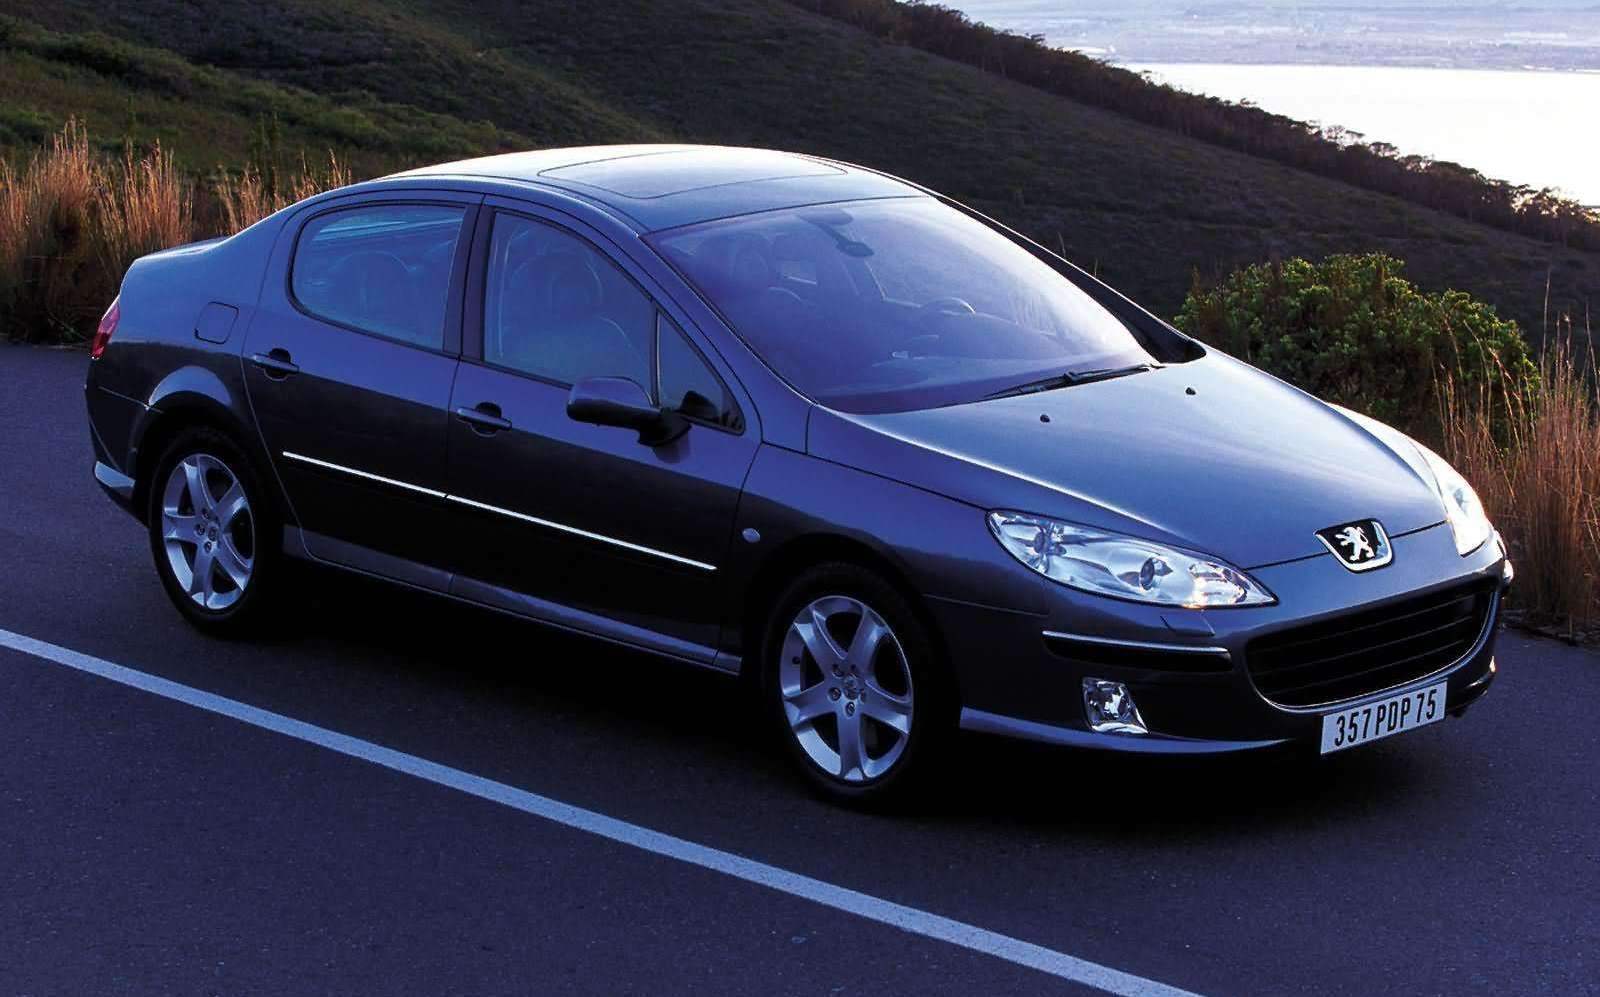 PEUGEOT 407 выпуска 2004 года — самый современный семейный автомобиль фирмы Peugeot, созданный в содружестве с компанией Pininfarina